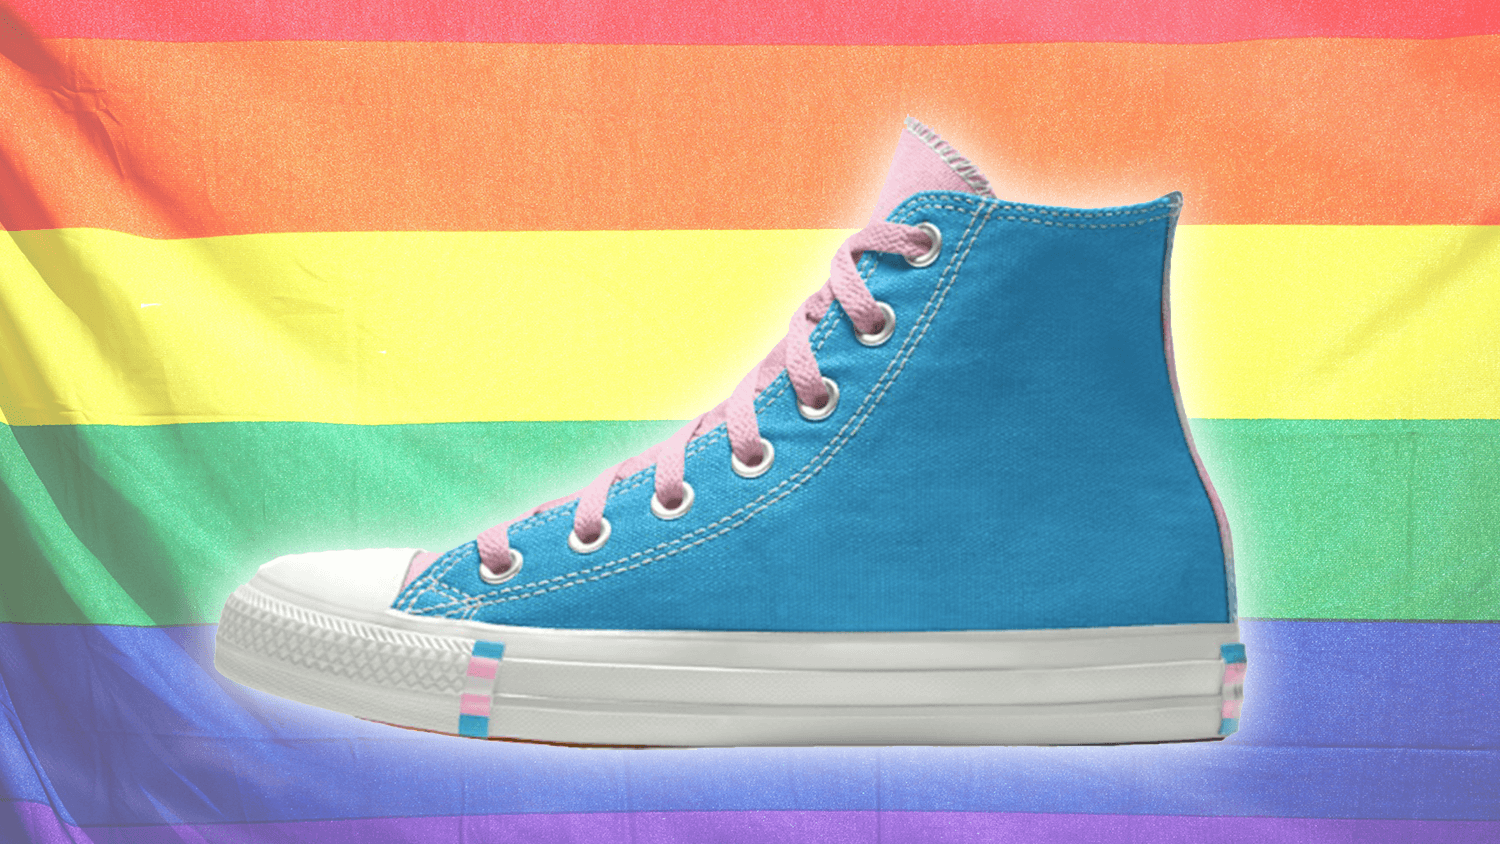 trans converse shoes